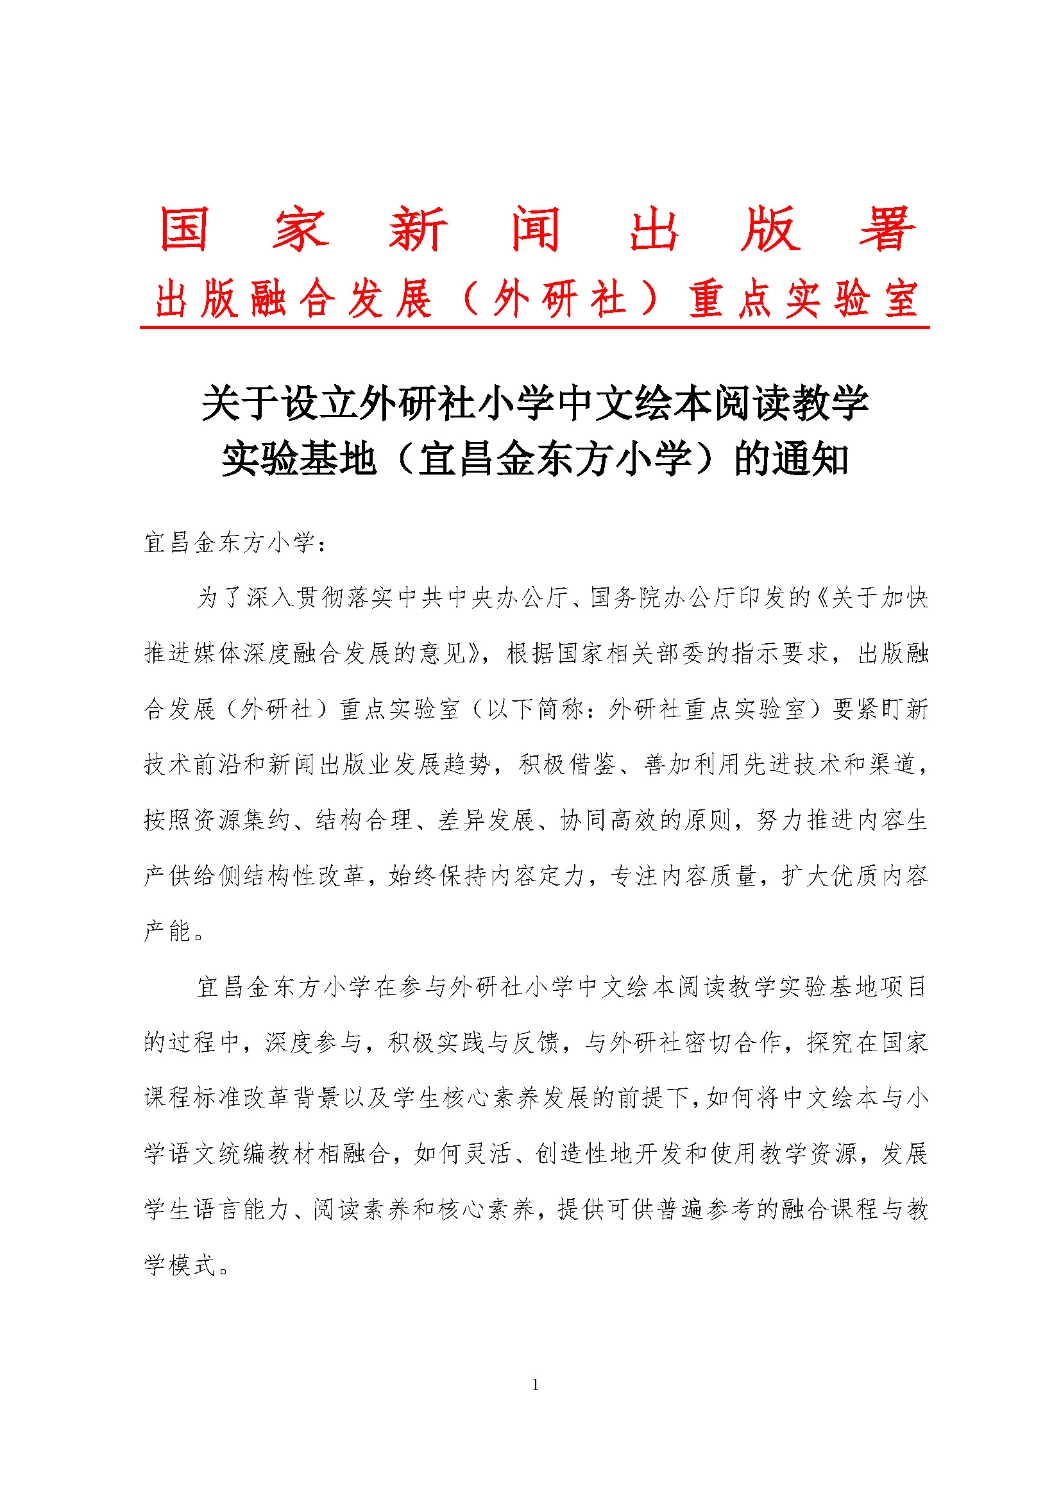 关于设立外研社小学中文绘本阅读教学基地通知（202106）_页面_1